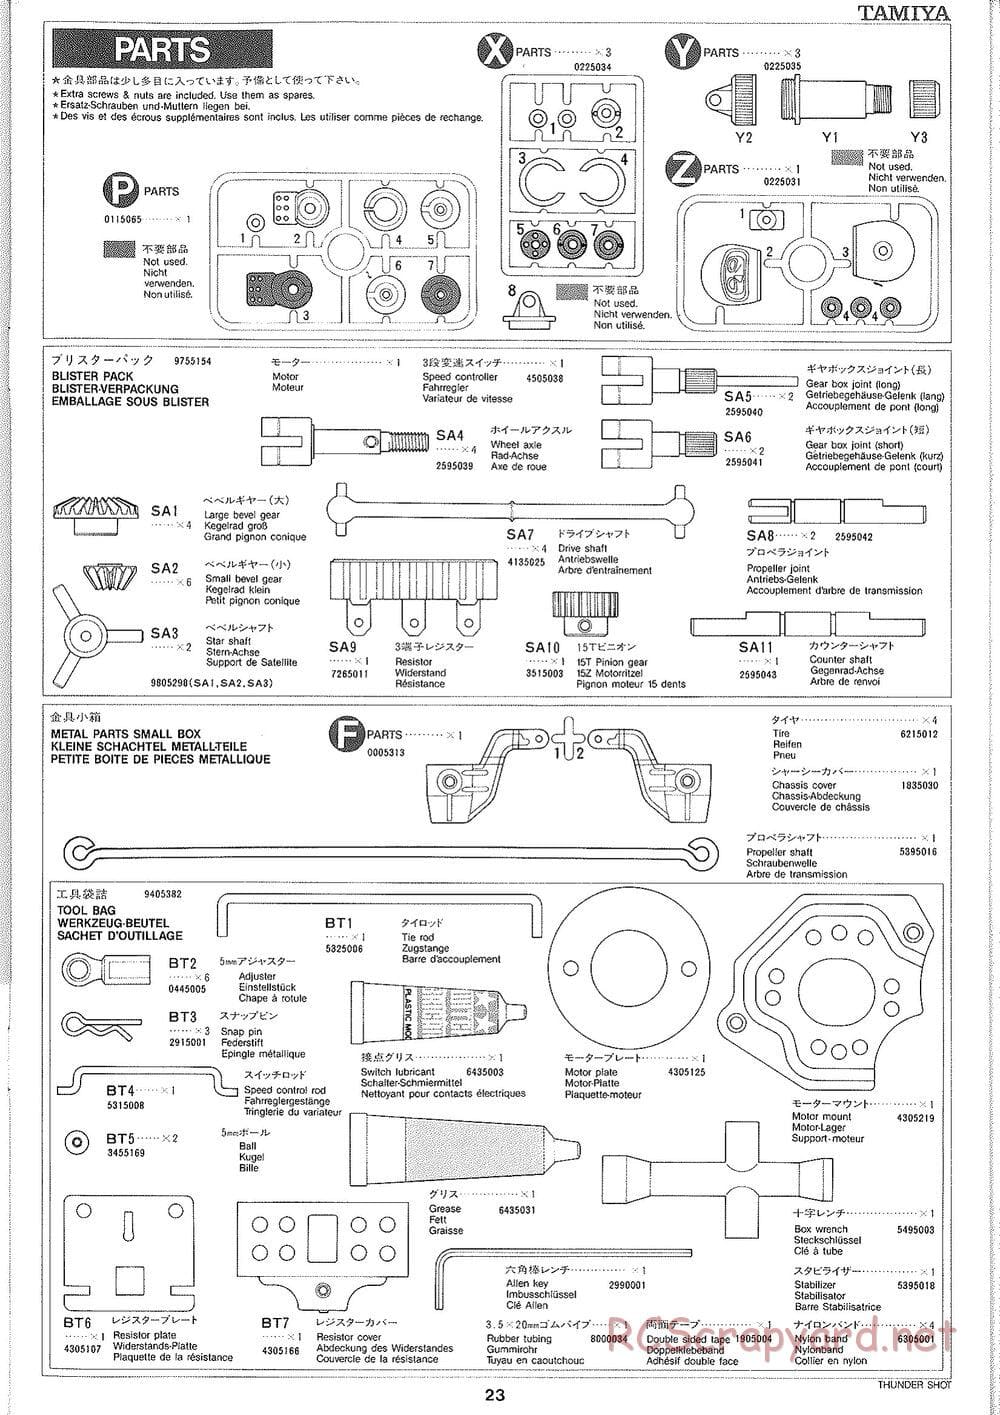 Tamiya - Thunder Shot - TS1 Chassis - Manual - Page 24